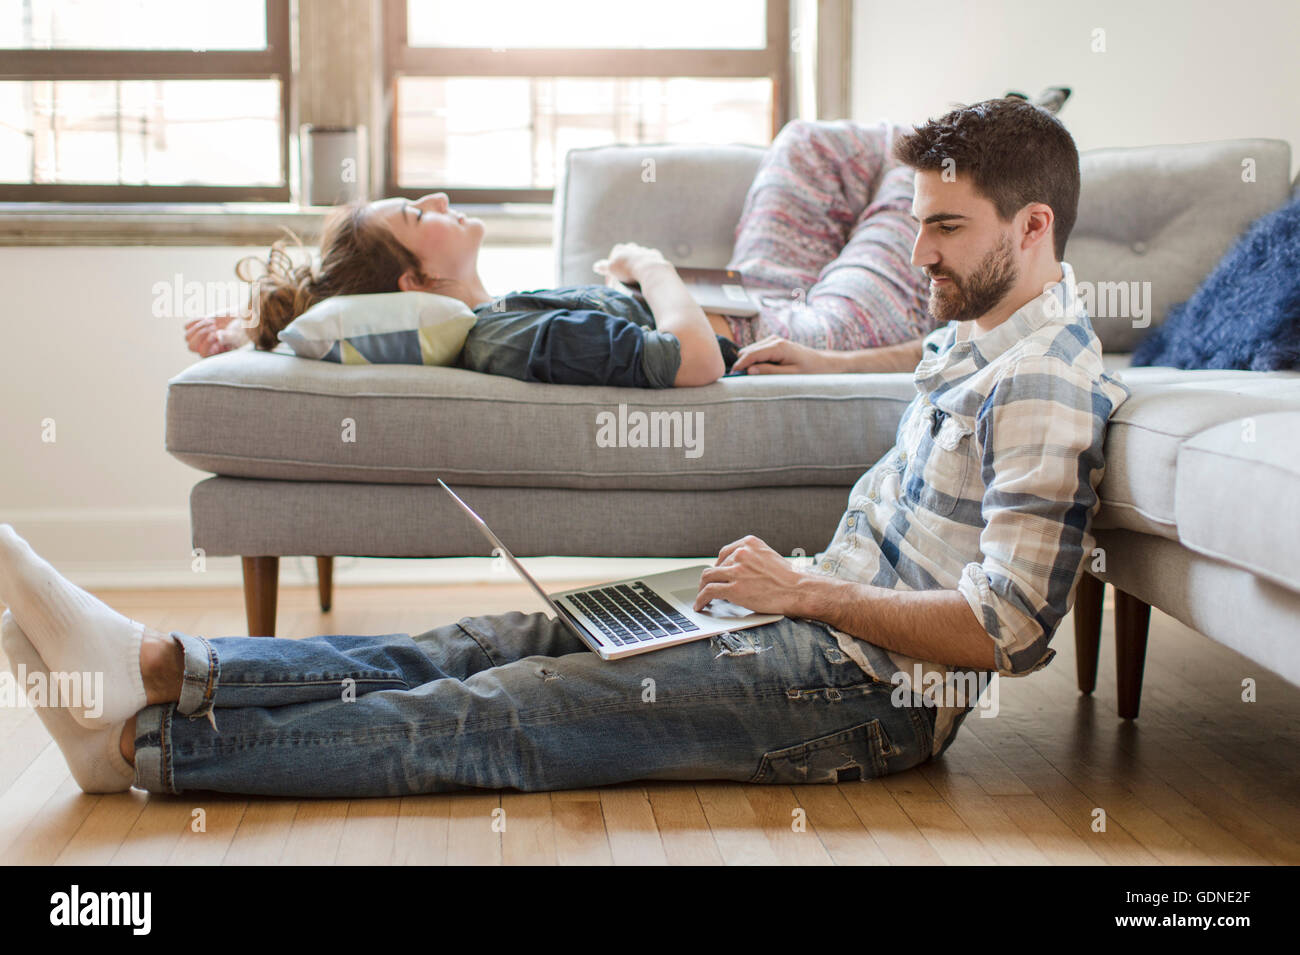 Young couple relaxing at home, jeune femme dormant sur un canapé, young man using laptop Banque D'Images